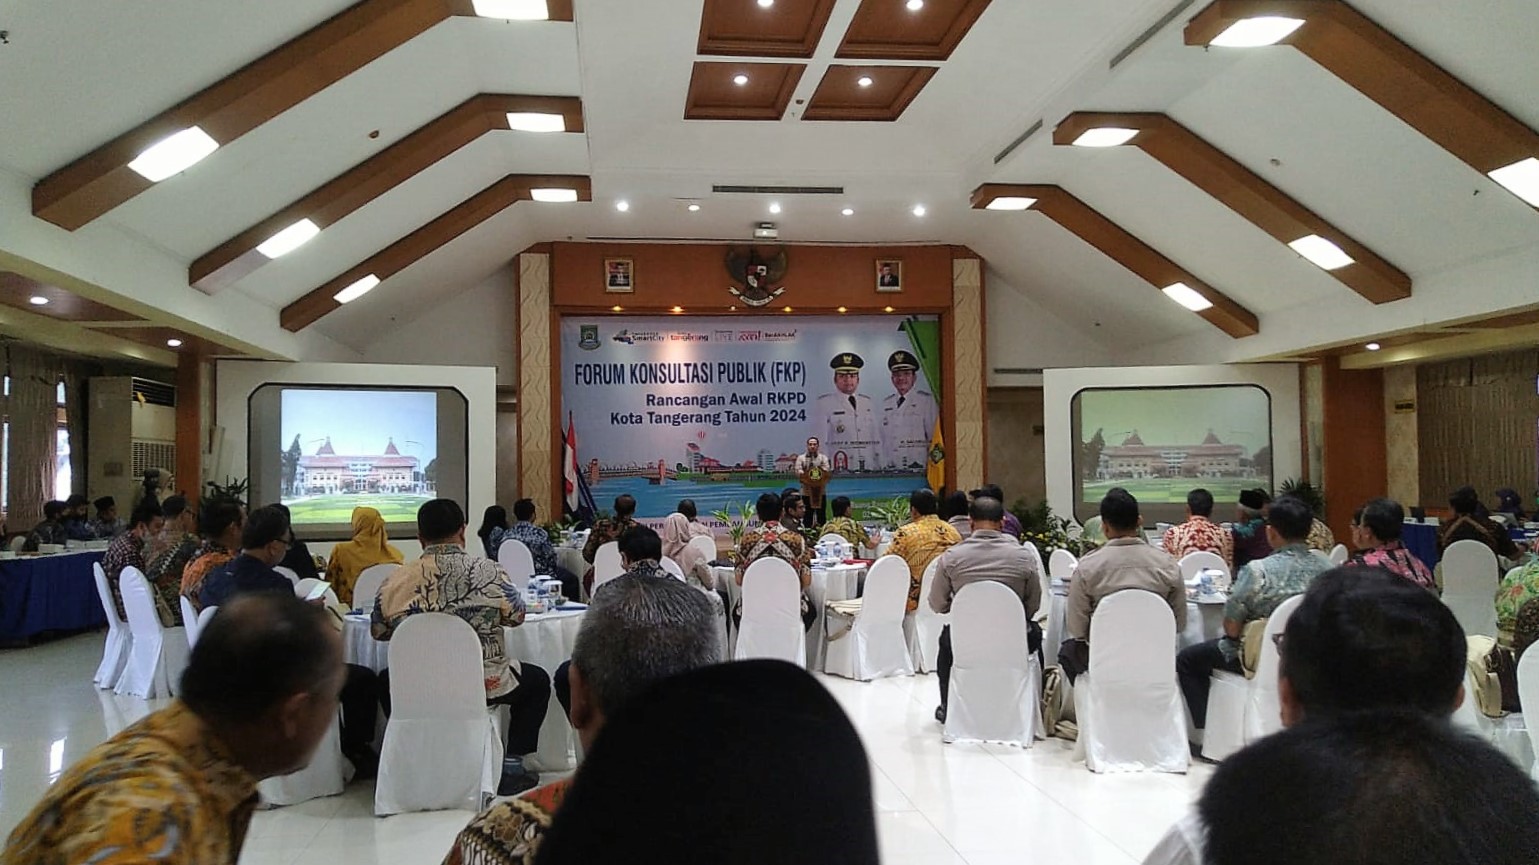 Rapat Forum Konsultasi Publik (FKP) Rancangan Awal RKPD Kota Tangerang Tahun 2024 di RR Al-Amanah Kota Tangerang